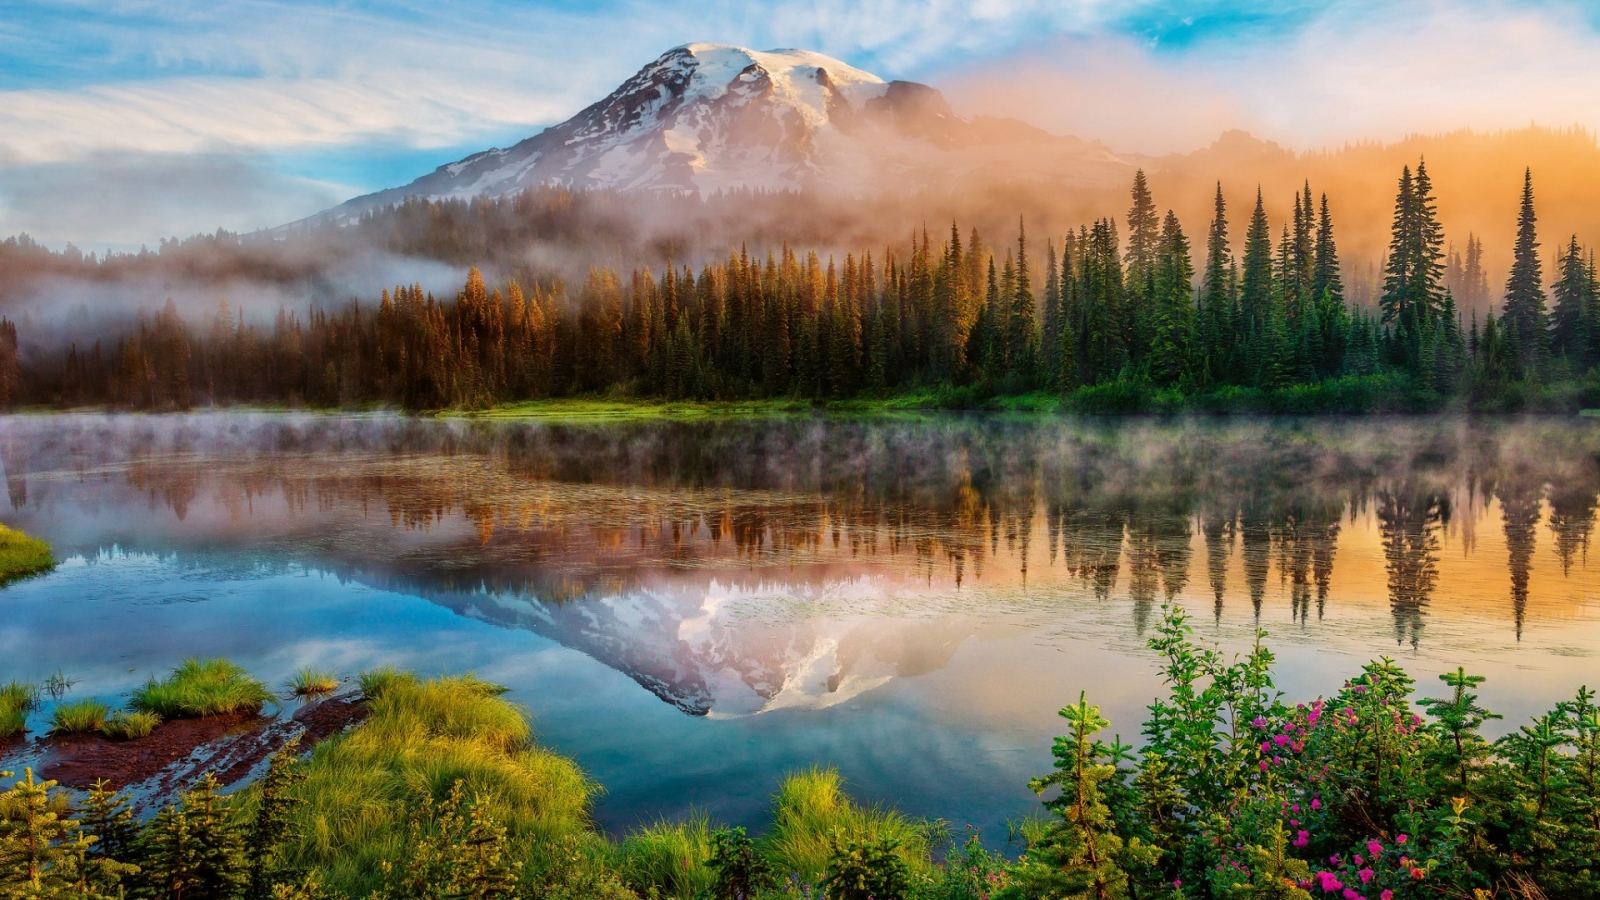 Mount Rainier Landscape for 1600 x 900 HDTV resolution